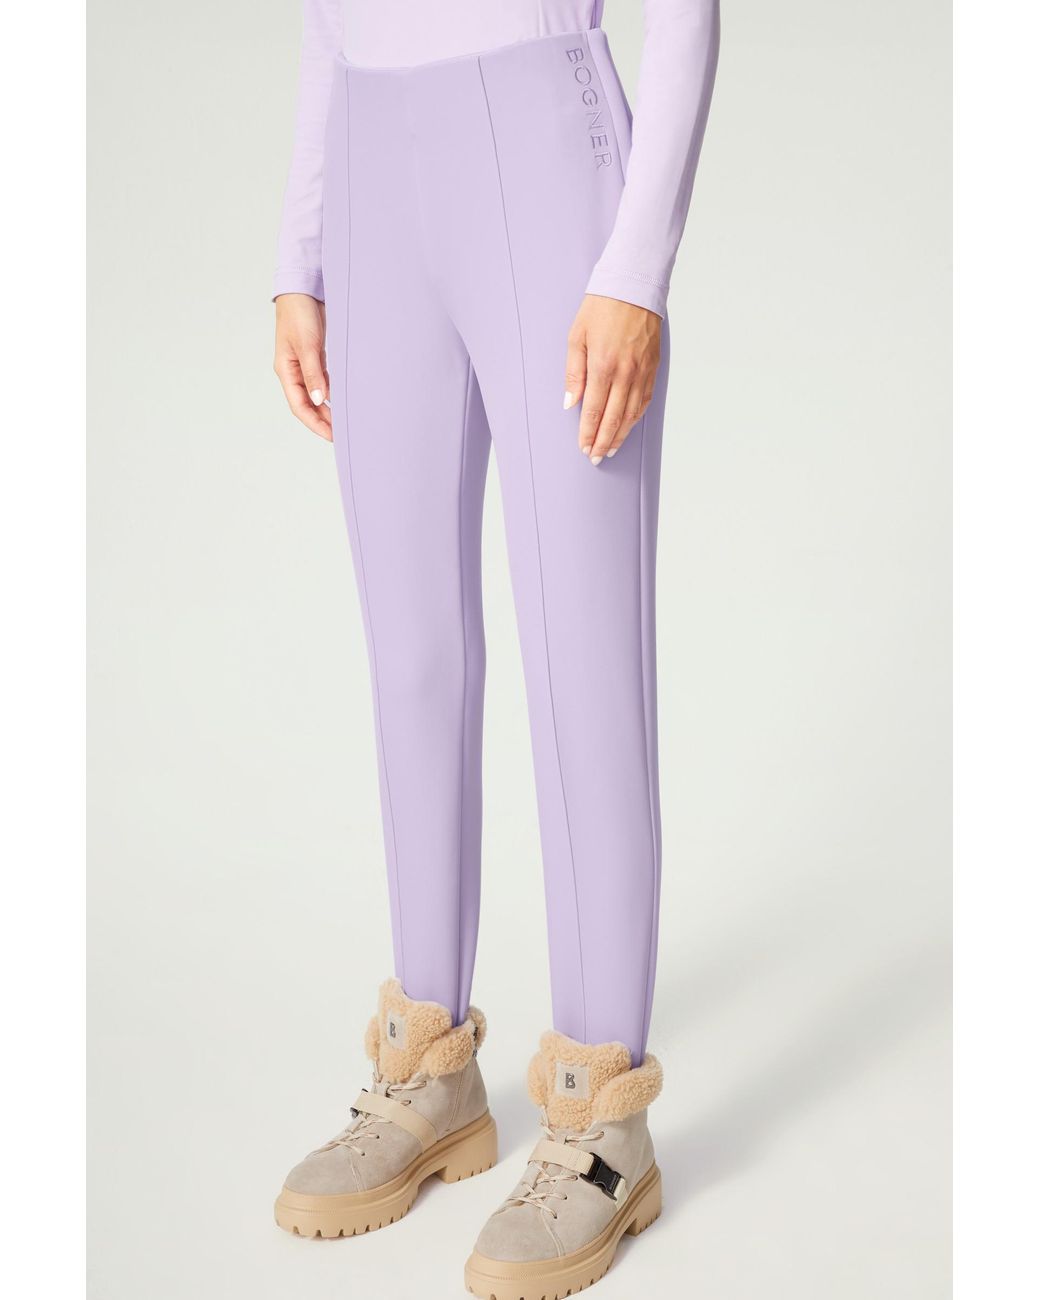 Bogner Elaine Stirrup Trousers in Purple